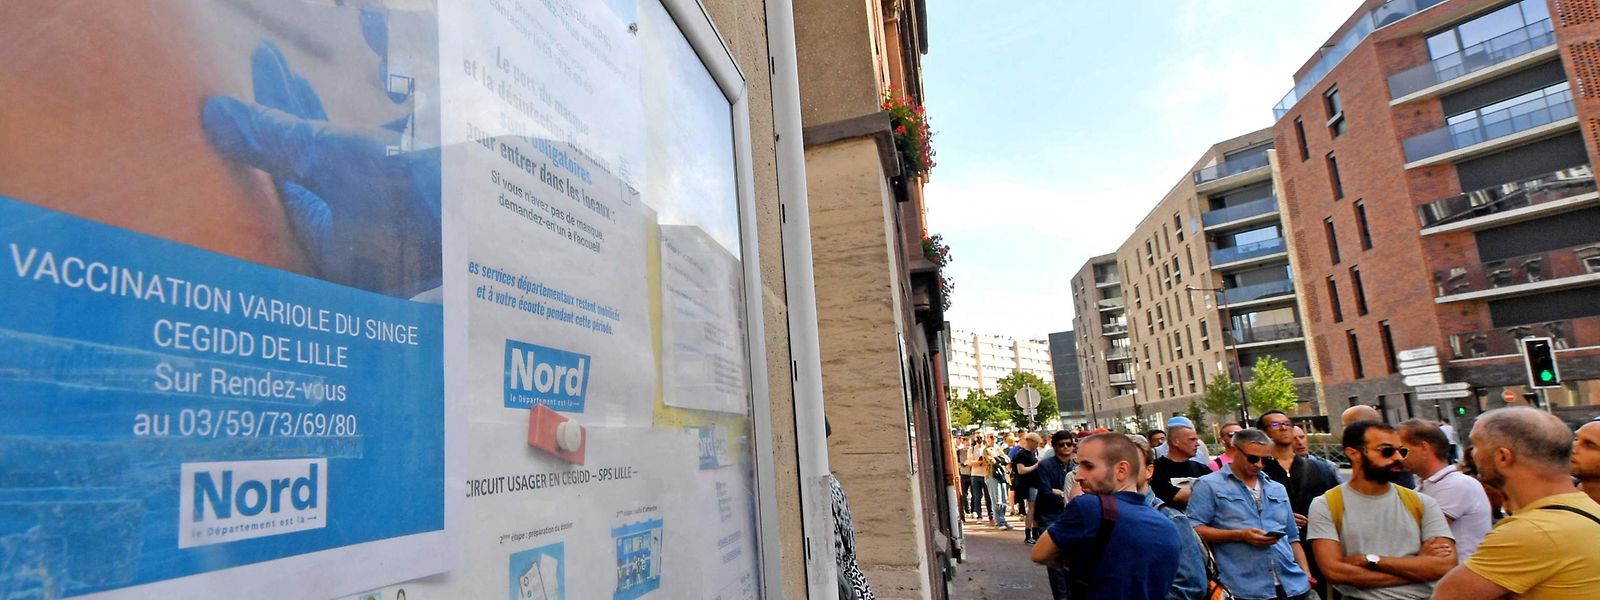 Nombreux sont aujourd'hui les Belges qui traversent la frontière pour aller se faire vacciner en France, notamment à Lille.